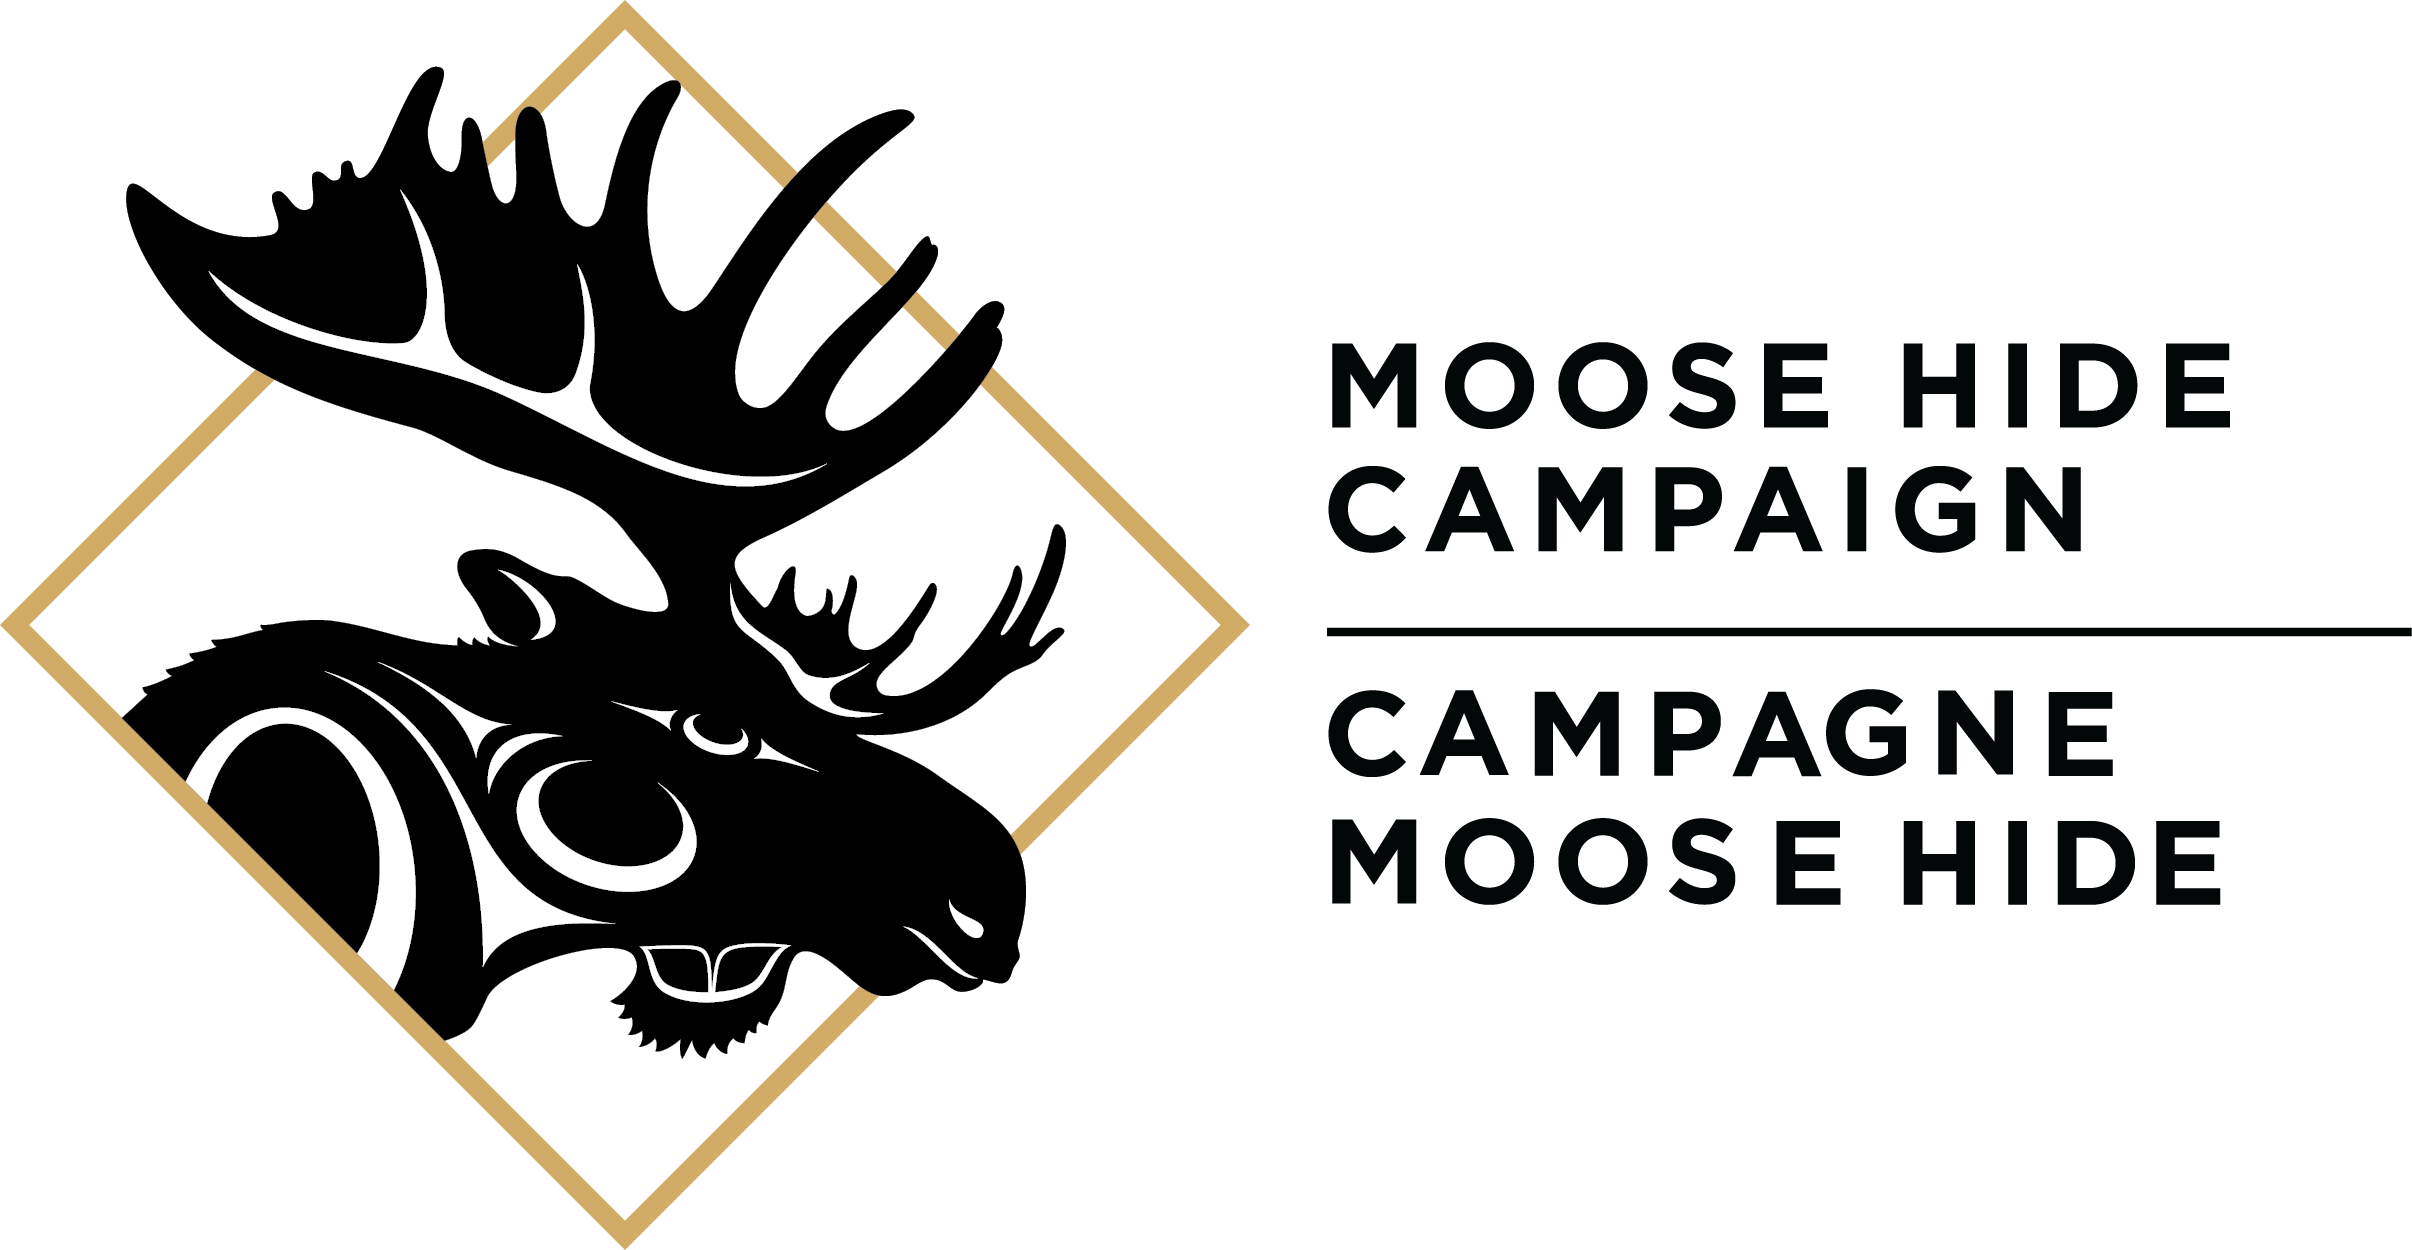 Moose Hide Campaign Education